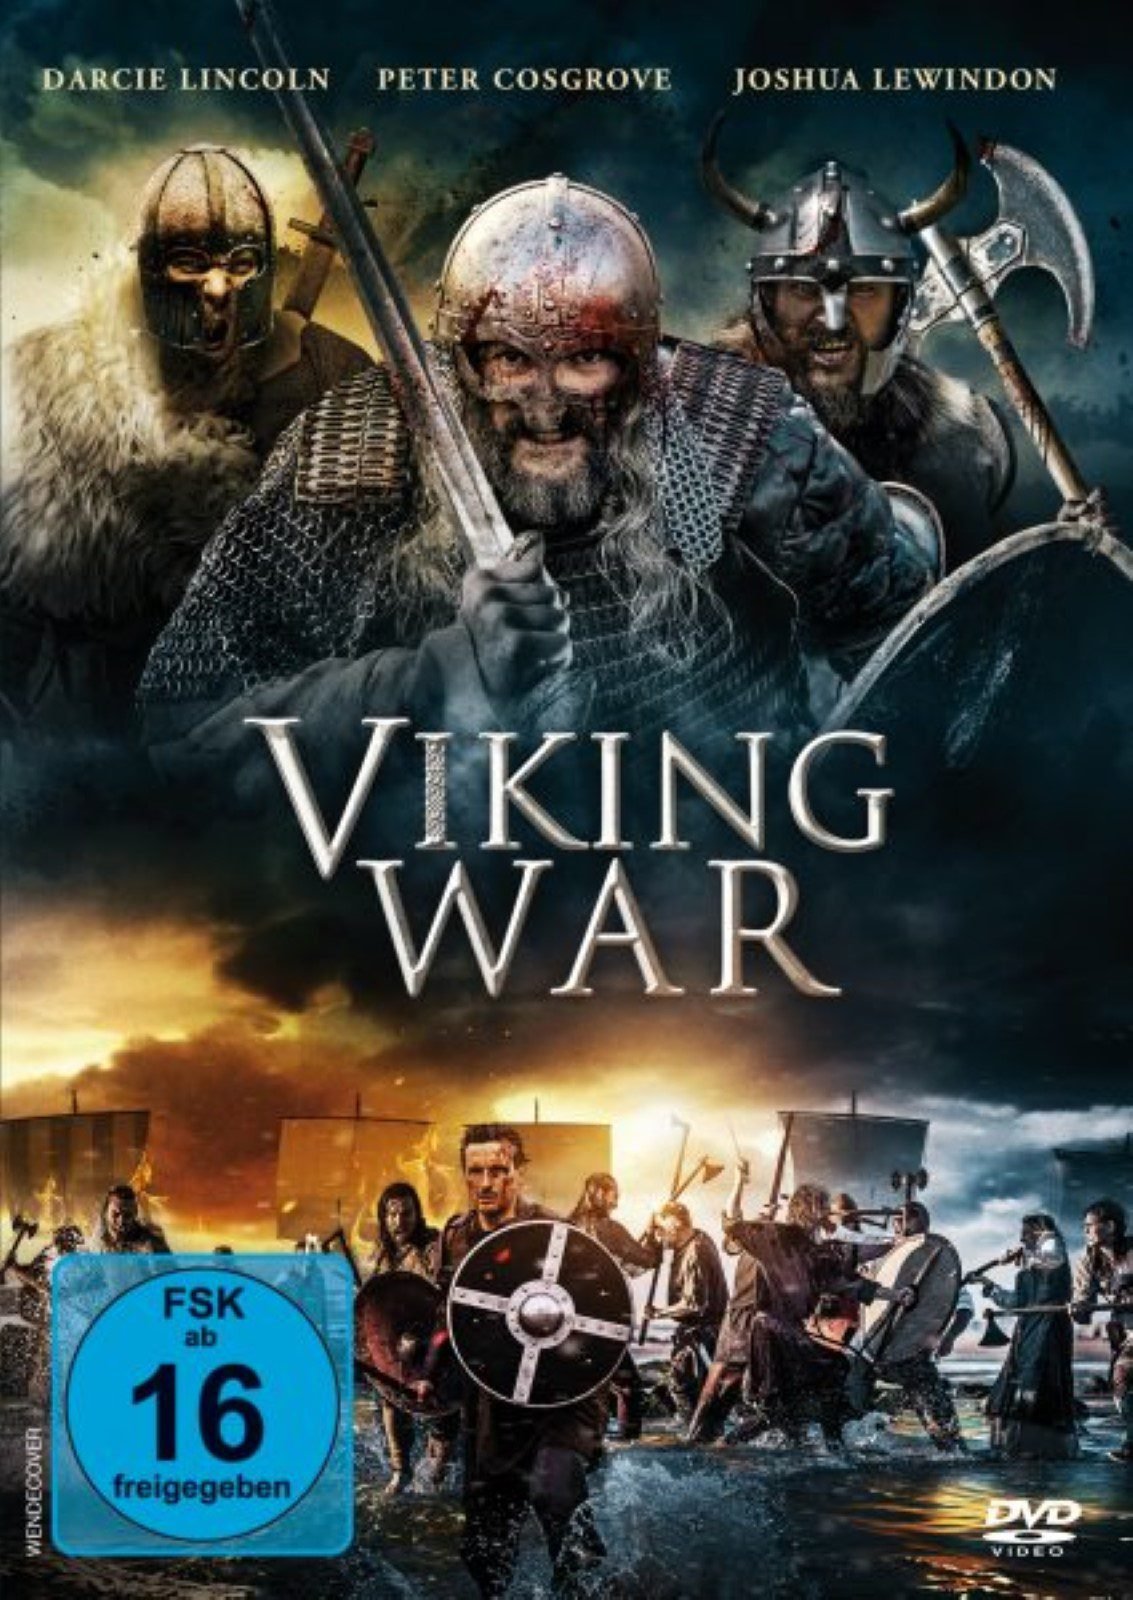 Affiche zum Viking Invasion - Blut wird fließen... - Bild 4 auf 4 - FILMSTARTS.de